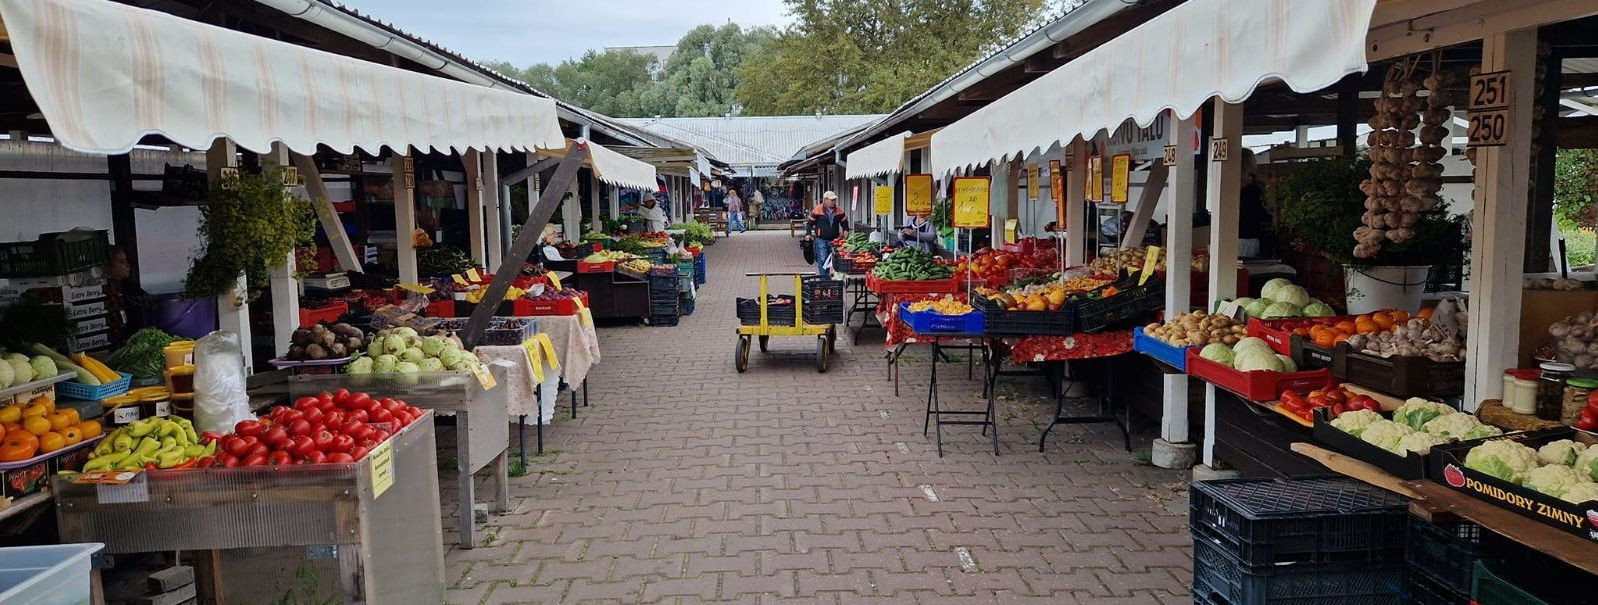 Tartu Turg on Lõuna-Eesti pikkade traditsioonidega kaubanduskultuurihoidja ja arendaja. Koostöös väiketootjate-kauplejatega ja käsitööliste ningtaimekasvatajate